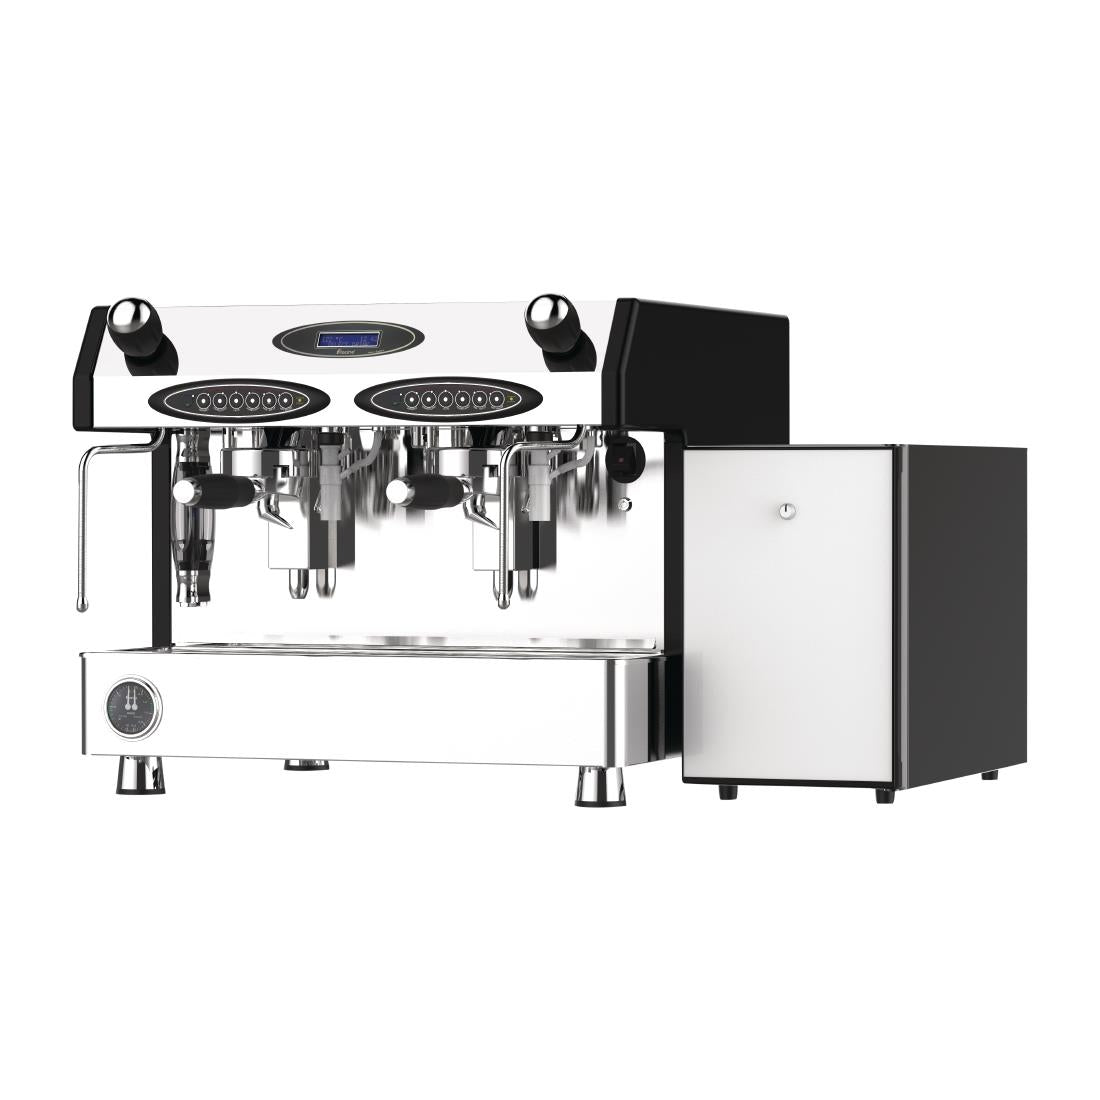 Fracino Velocino2 Espresso Coffee Machine with Fridge - CY134 2 Group Espresso Coffee Machines Fracino   